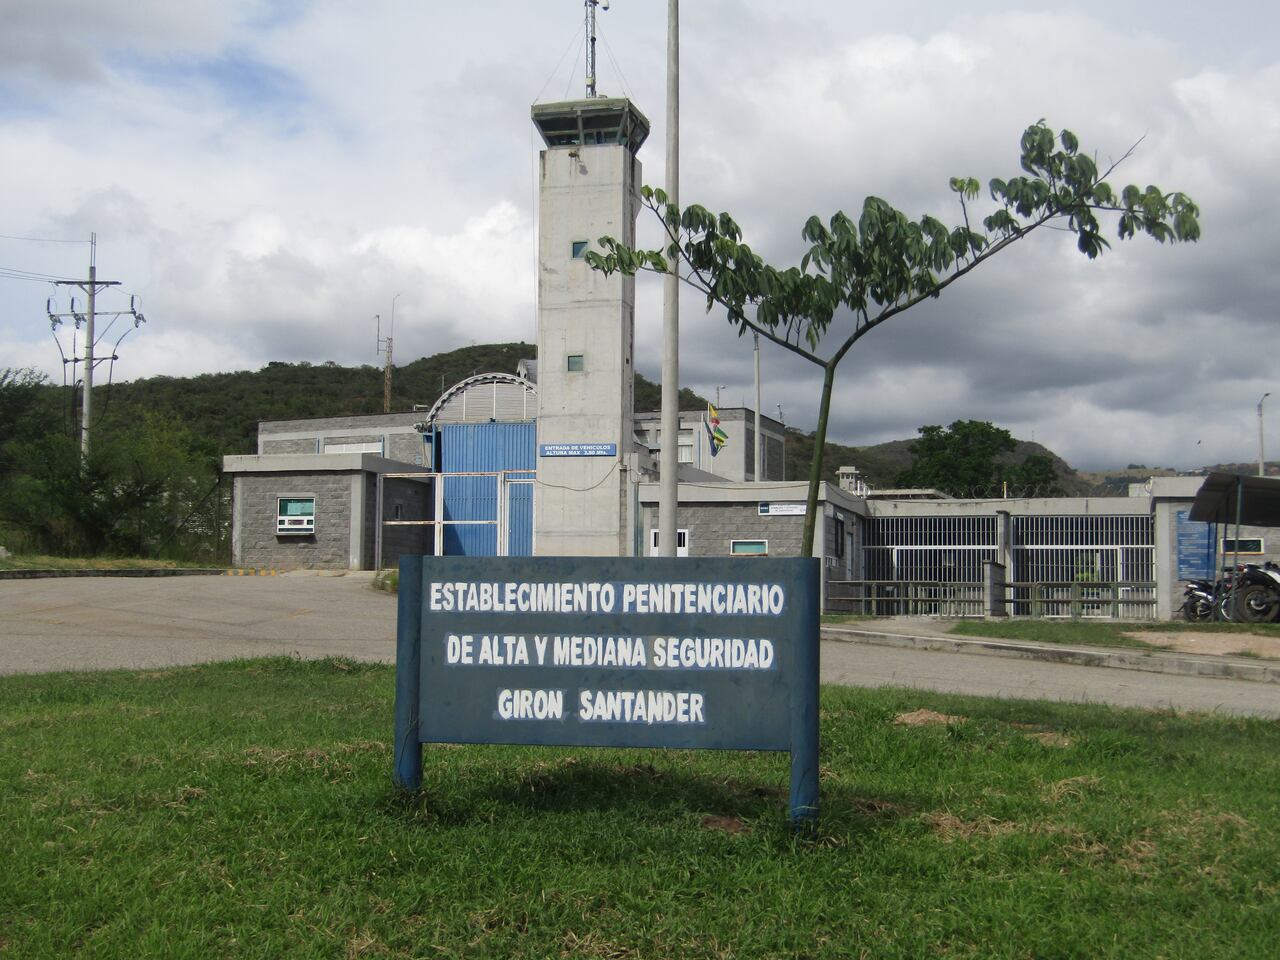 Cárcel y penitenciaria con alta y media seguridad de Girón, Palogordo.